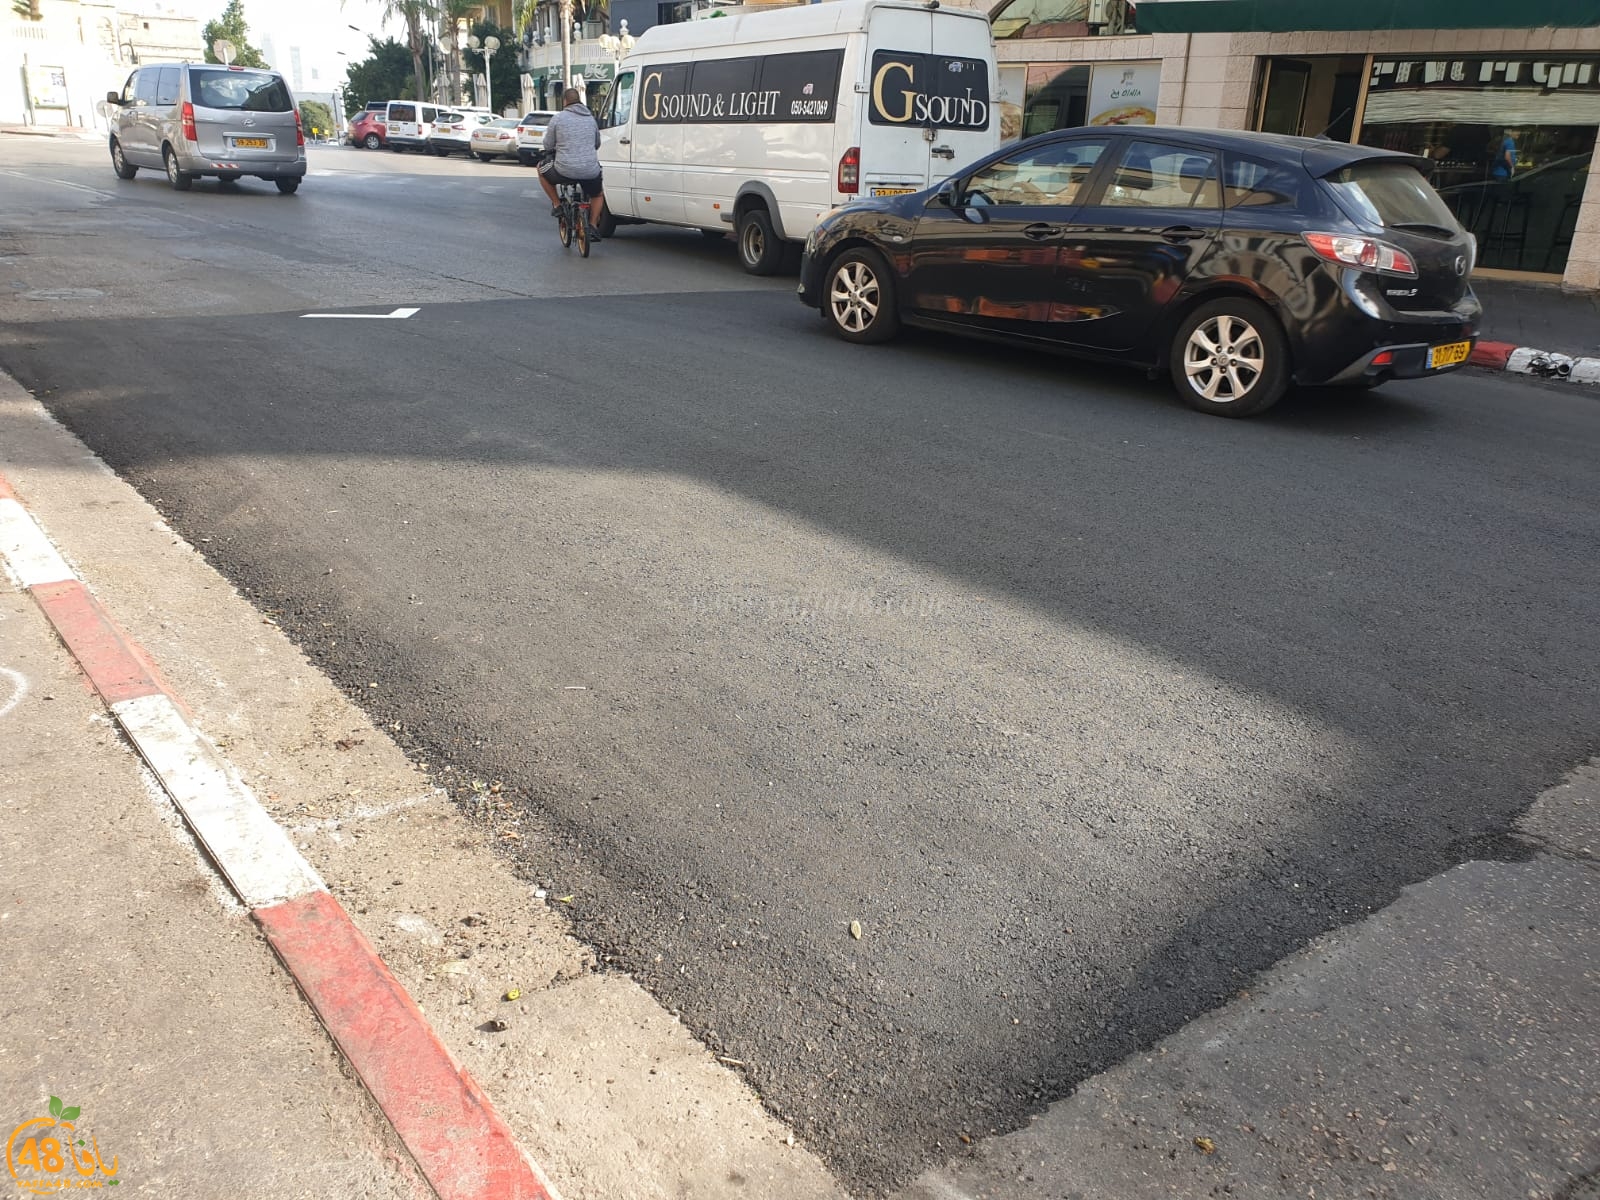  يافا: البلدية تنصاع لمطالب السكان - انشاء مطبات في شارع ييفت للحد من الحوادث